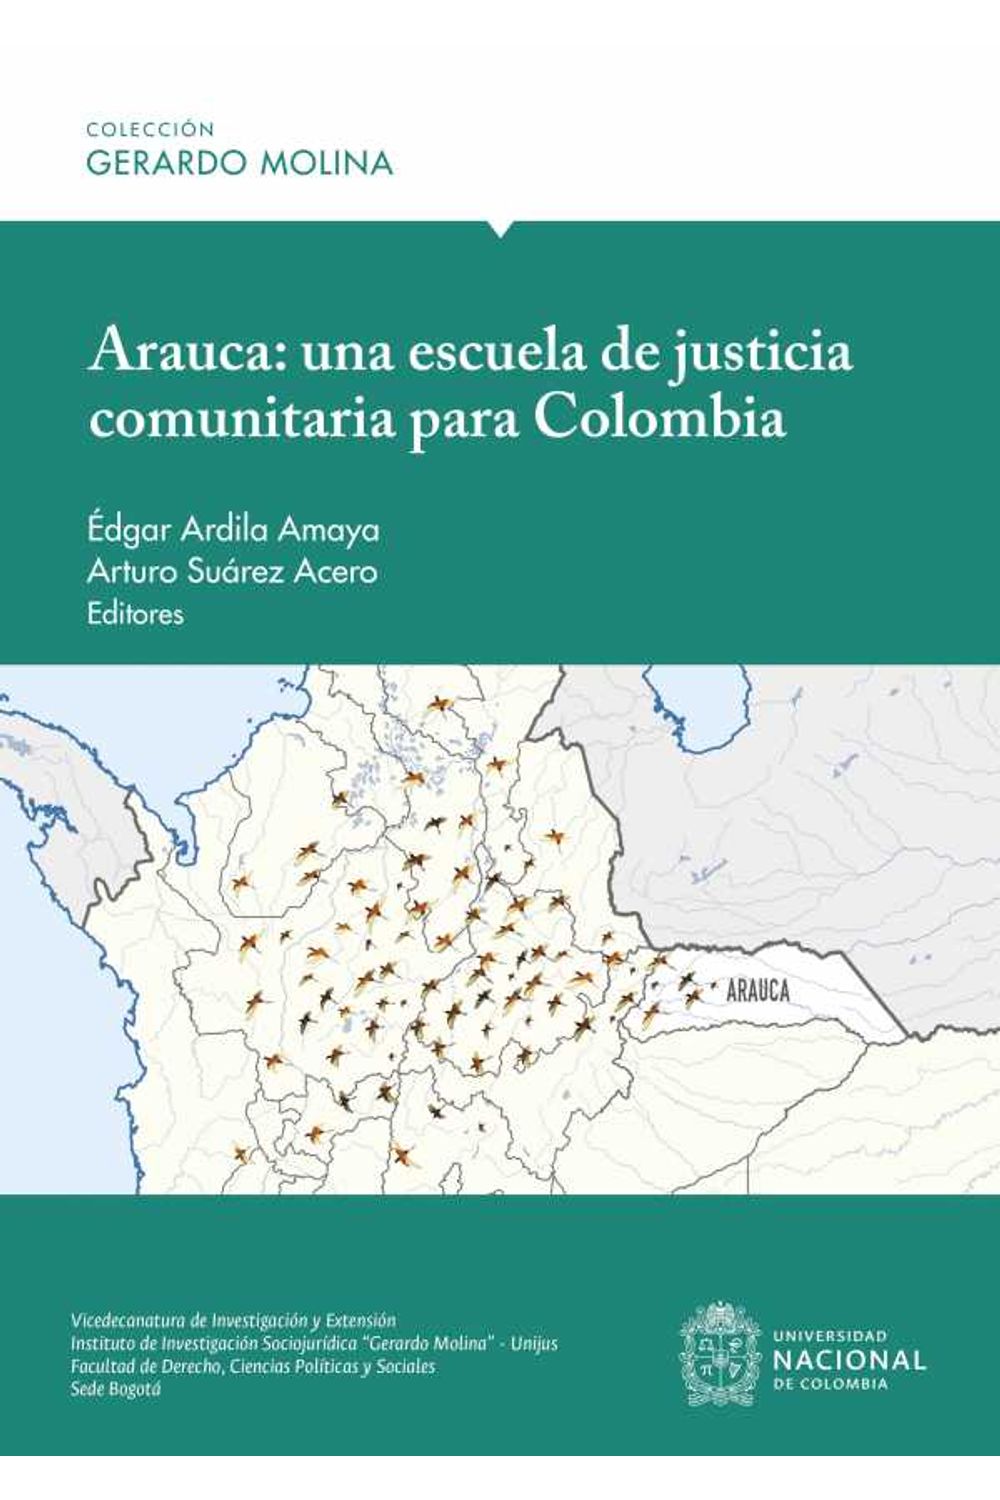 bw-arauca-una-escuela-de-justicia-comunitaria-para-colombia-universidad-nacional-de-colombia-9789587945560